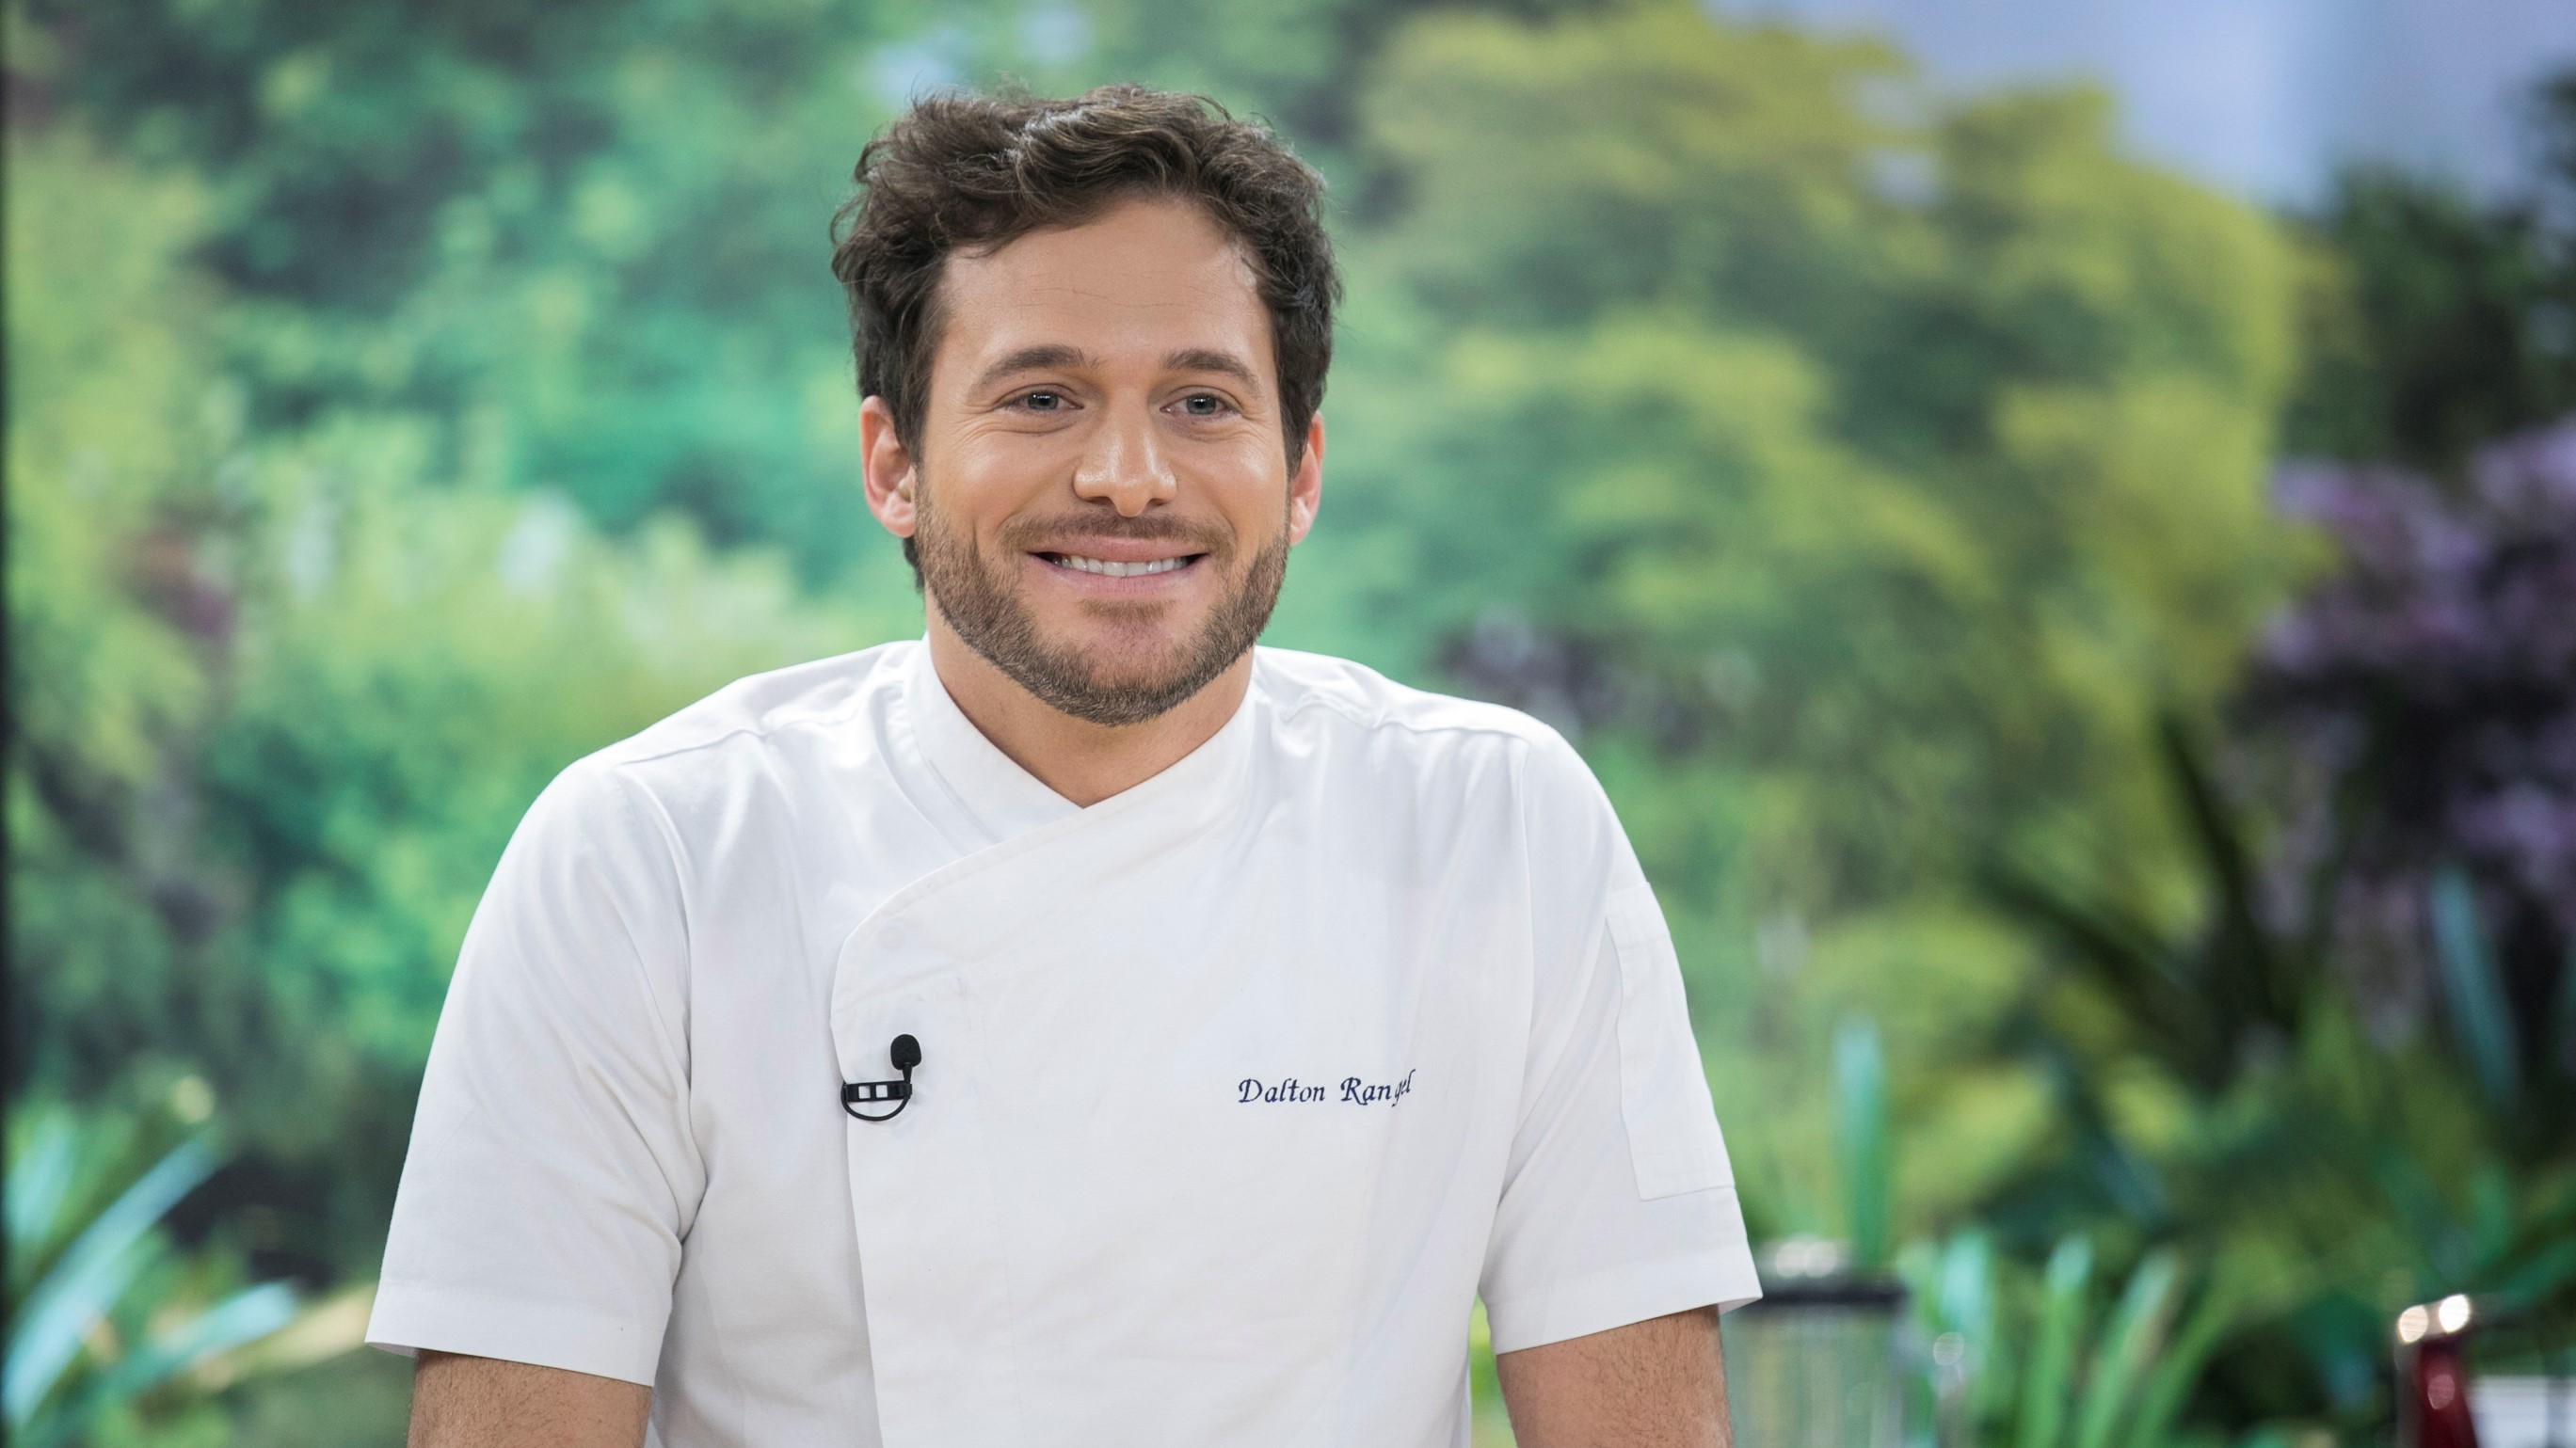 Chef Dalton Rangel apresentará novo reality culinário no Hoje em Dia (Foto: Edu Moraes)